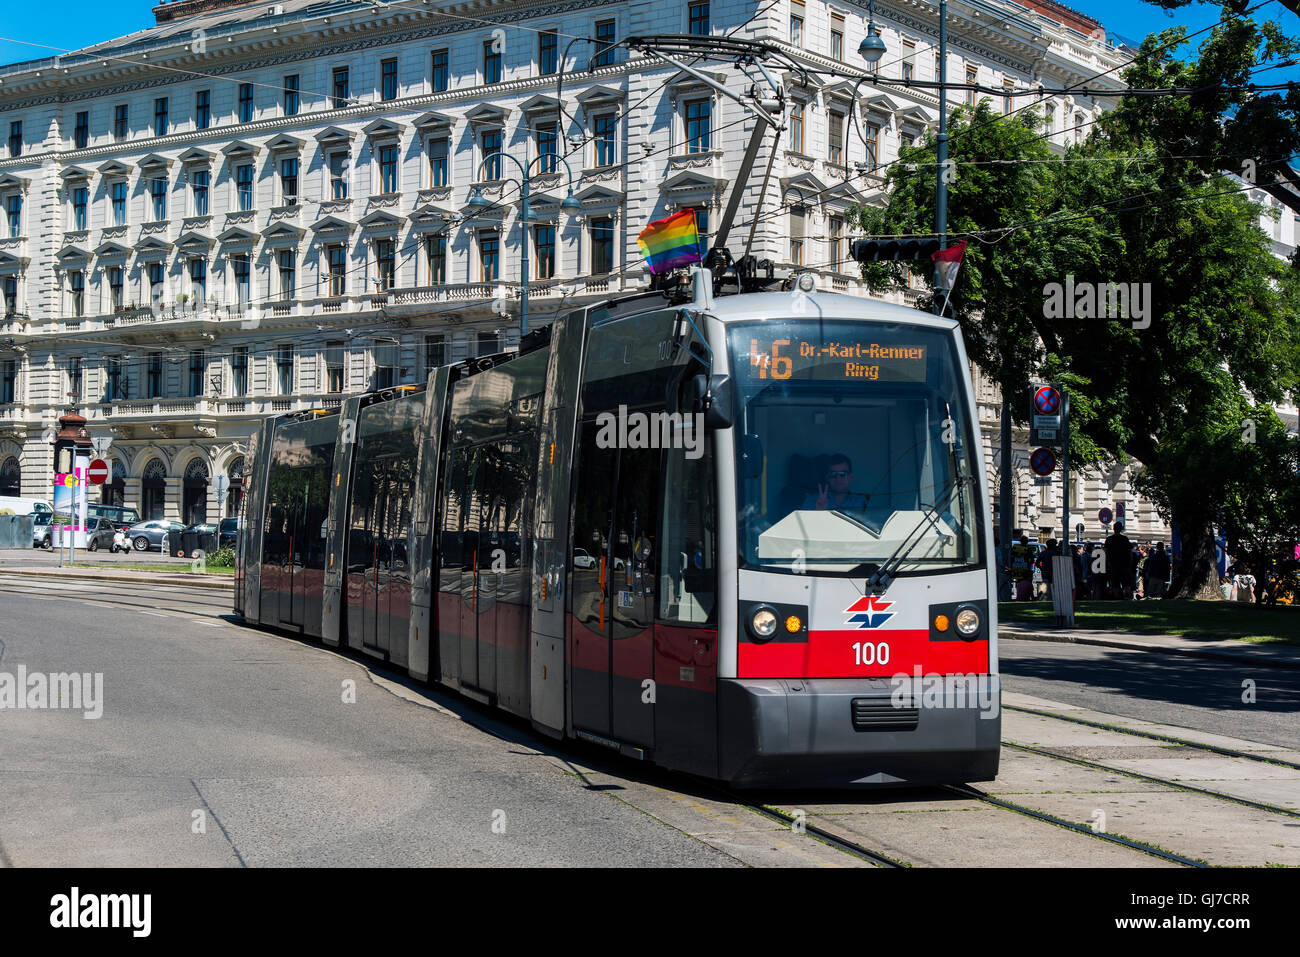 Gay ondear la bandera del arco iris en un tranvía durante el Día del Orgullo Gay, Viena, Austria Foto de stock